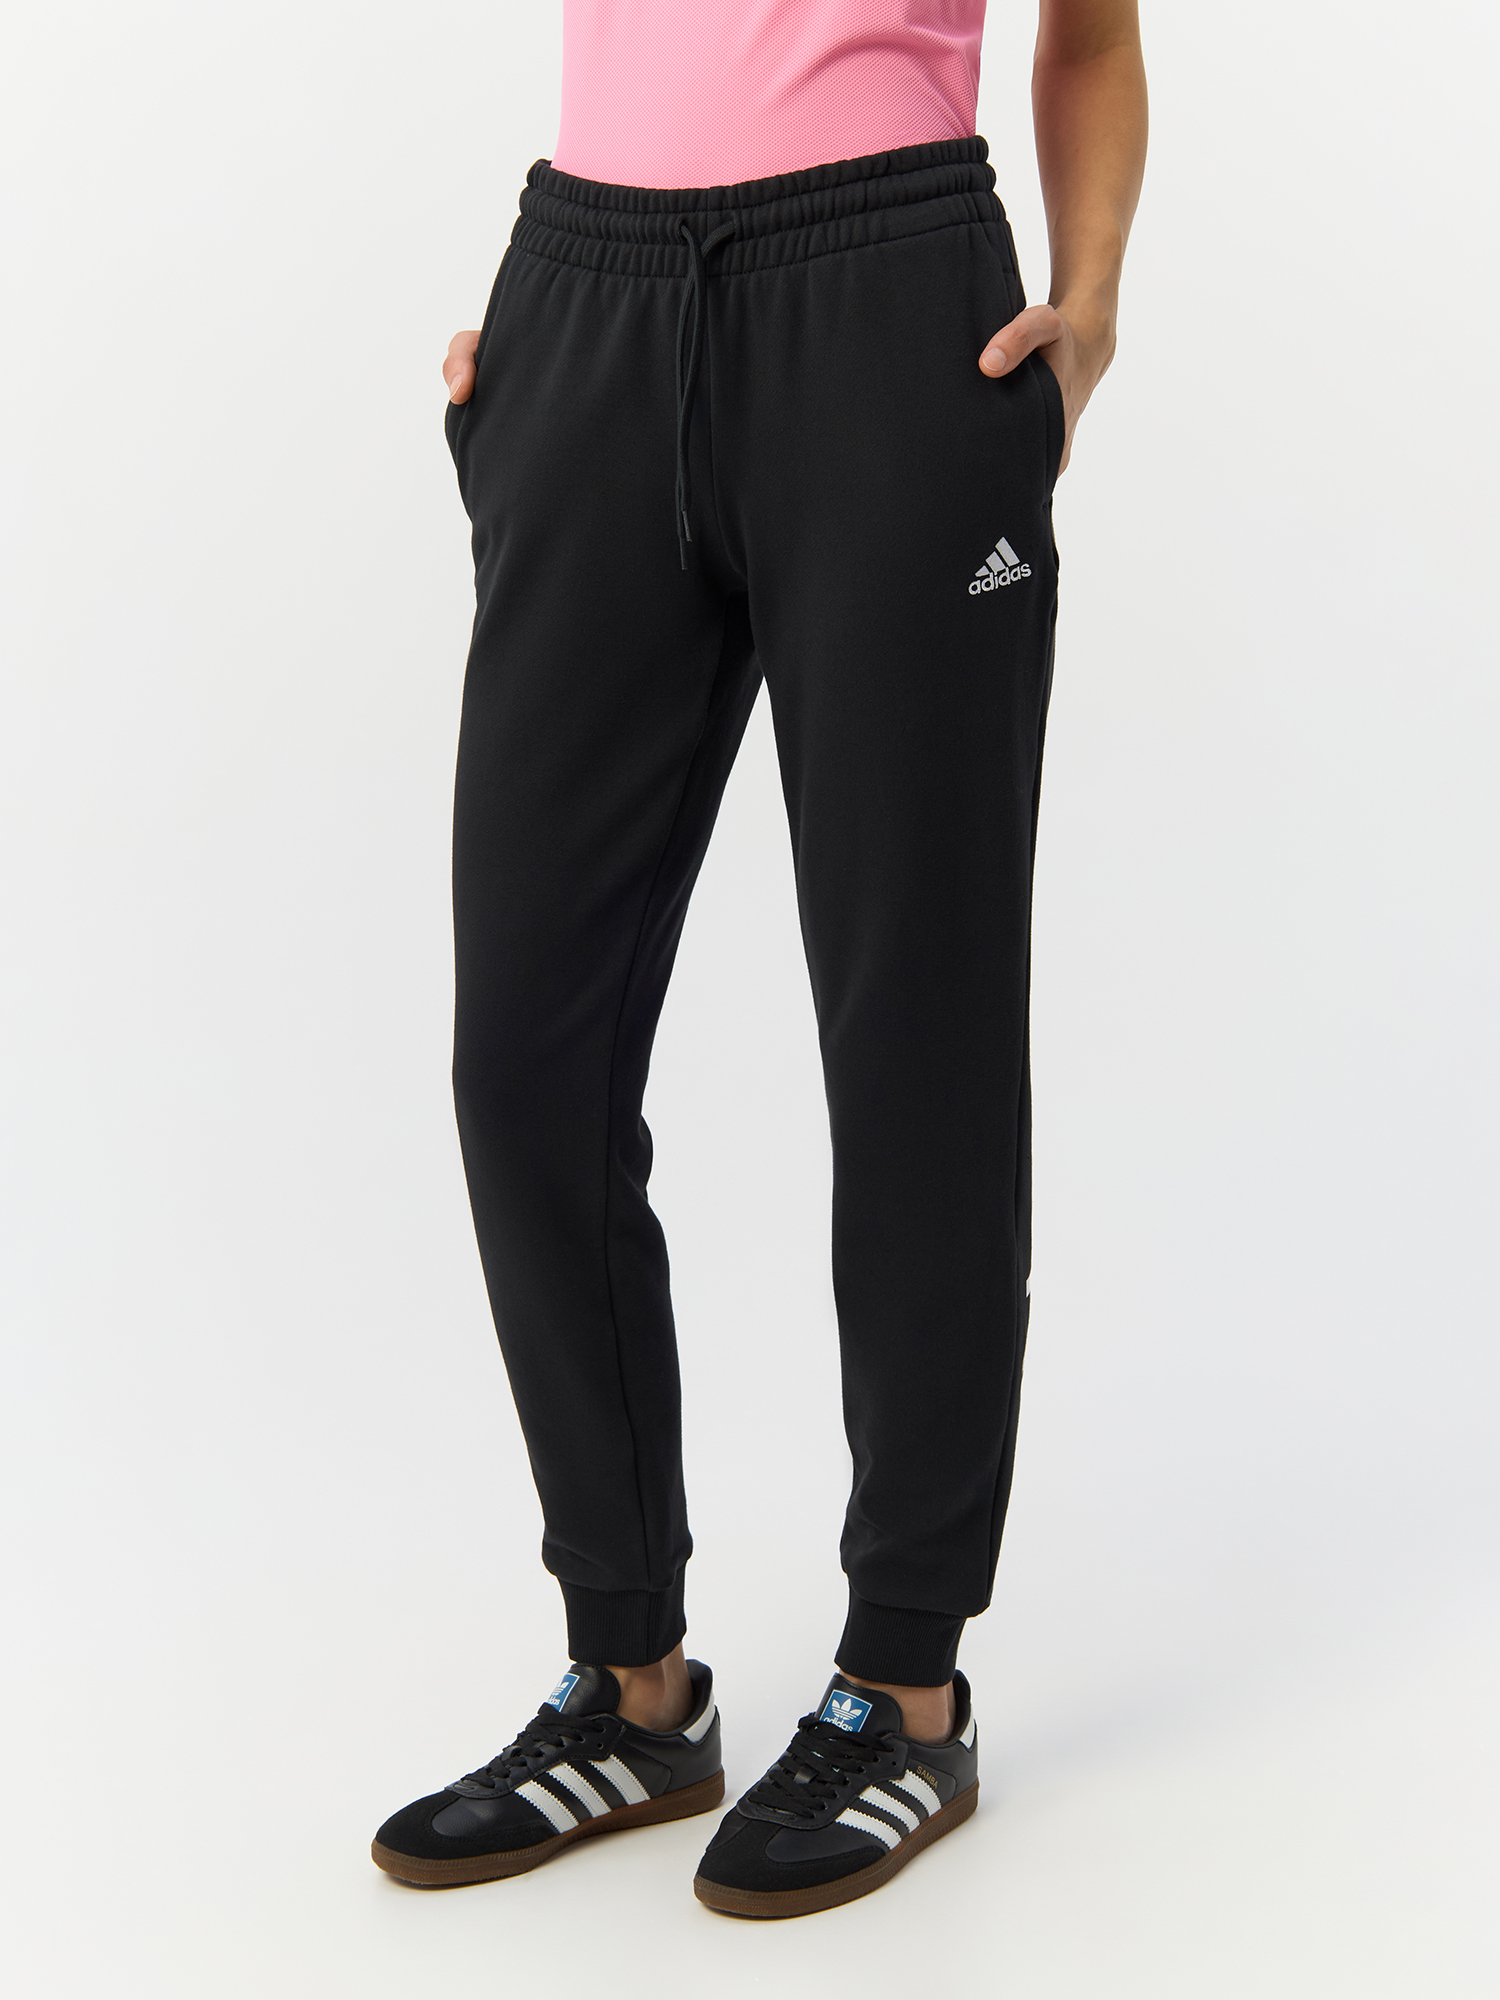 Брюки Adidas для женщин, спортивные, IC6868, размер XS, чёрно-белые-095A